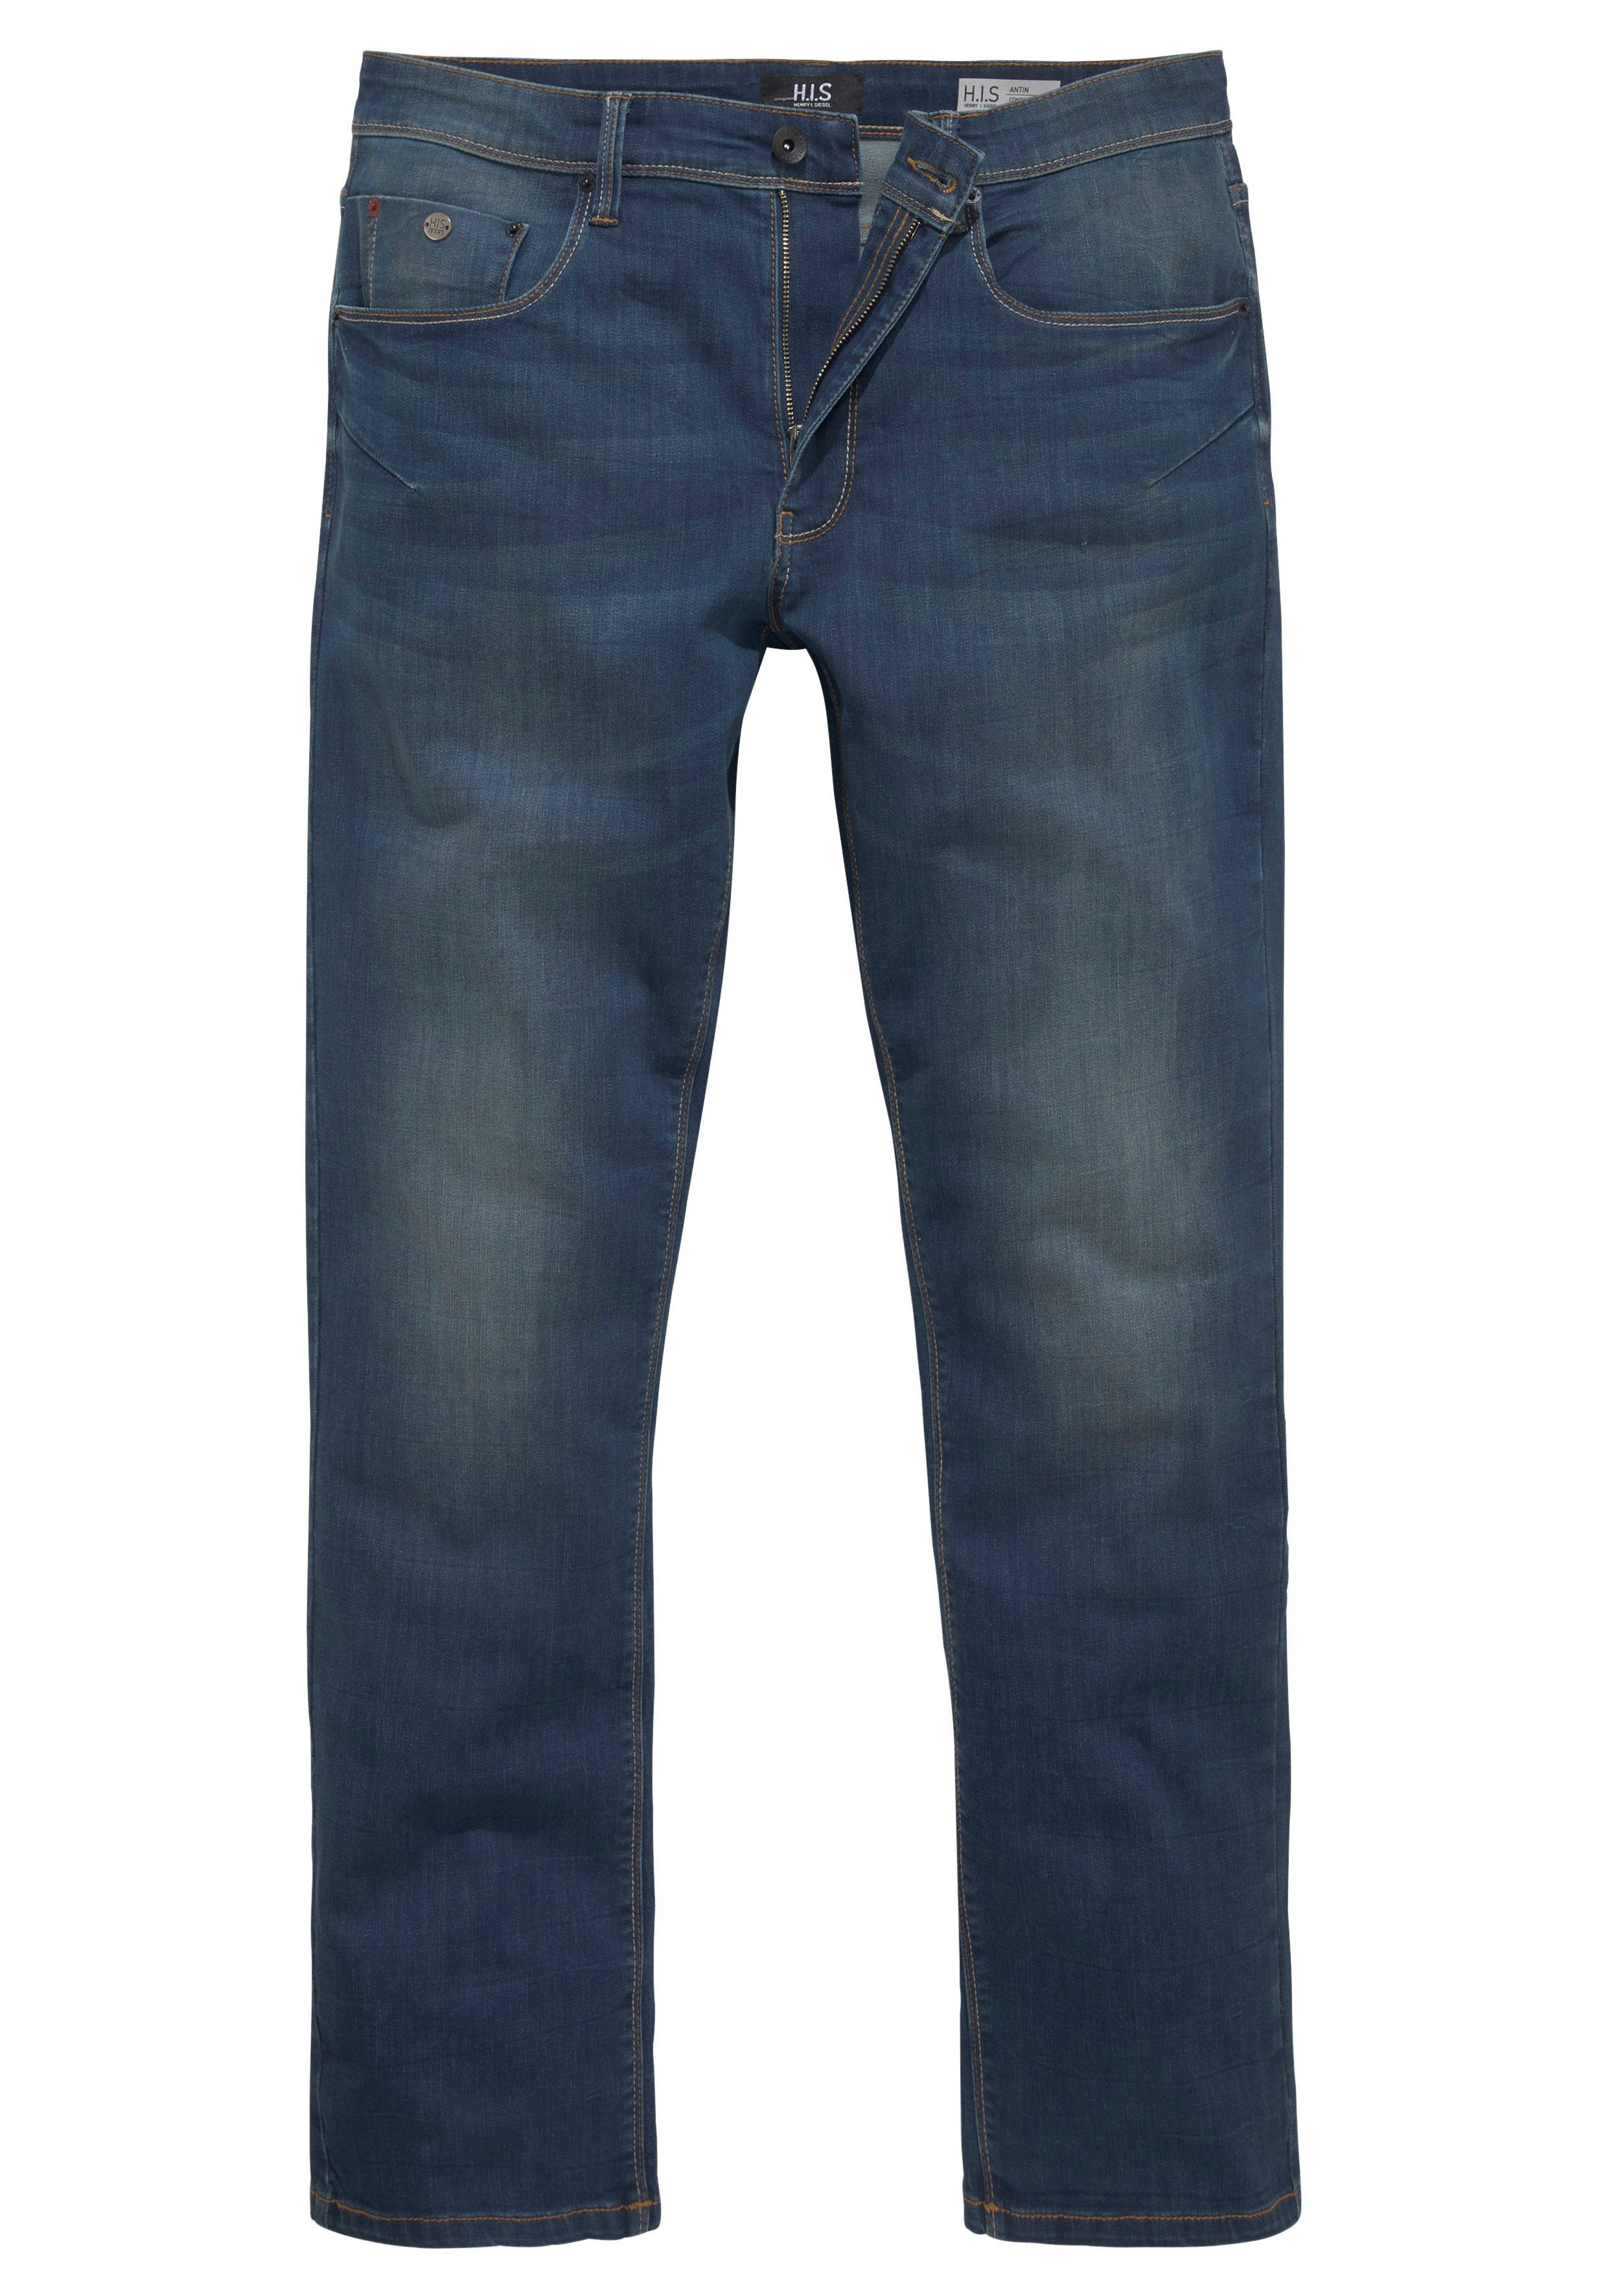 Wash H.I.S wassersparende durch Produktion Ozon Ökologische, ANTIN Comfort-fit-Jeans dark-blue-used